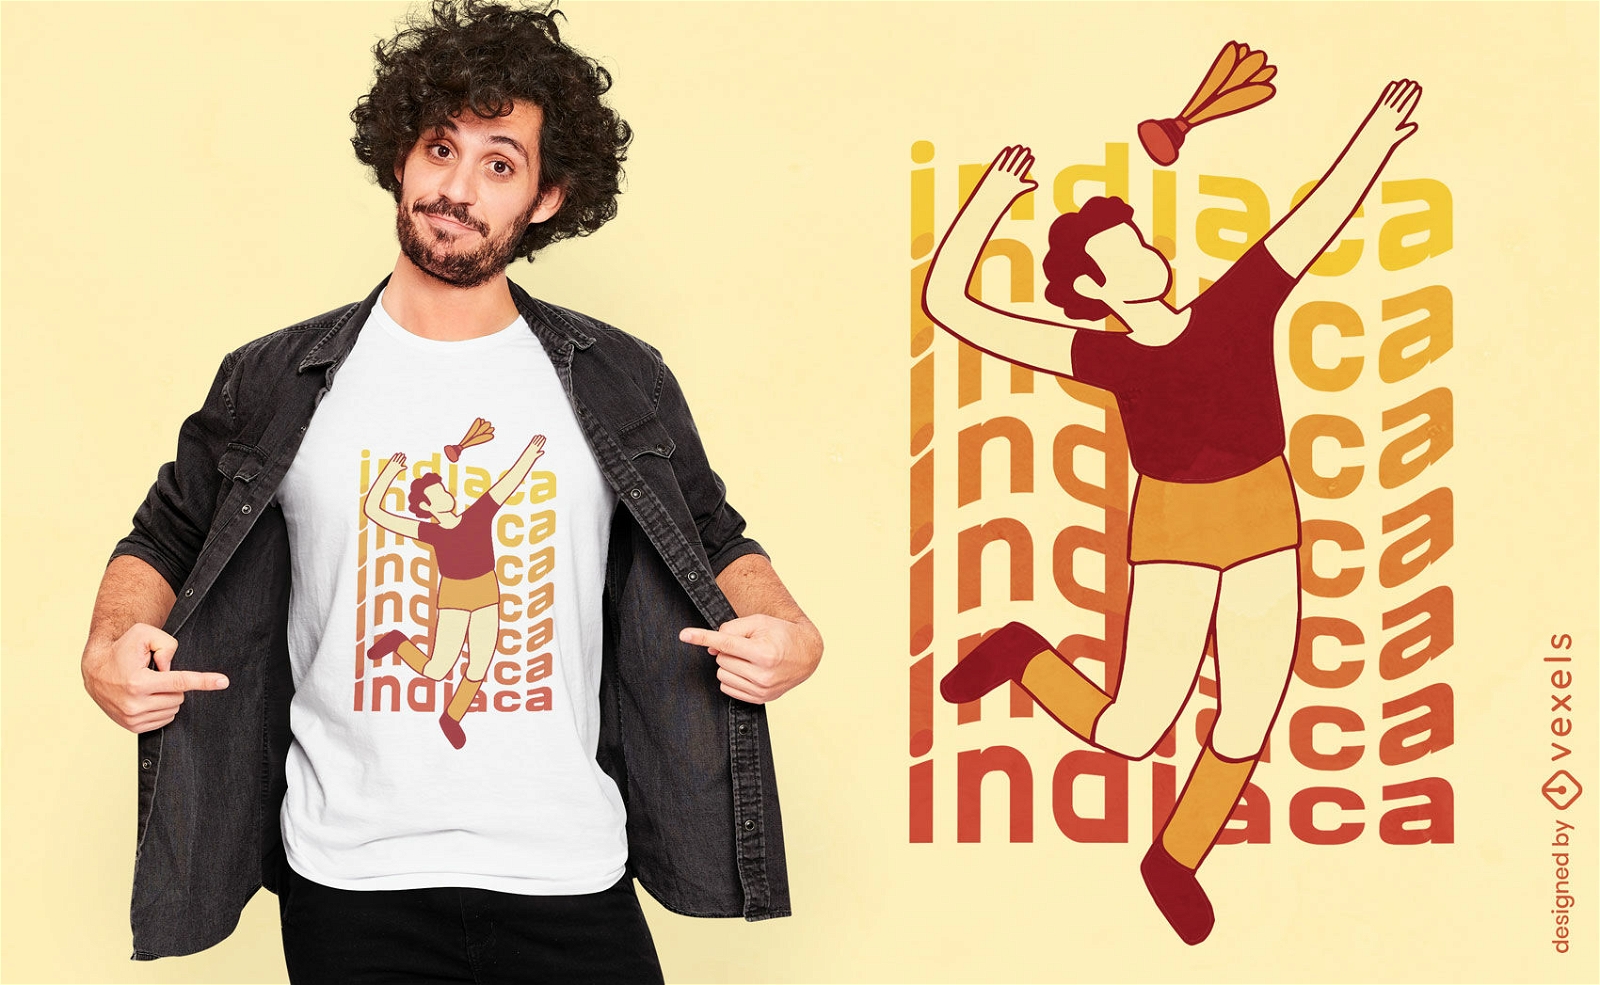 Indiaca-Spieler-T-Shirt-Design